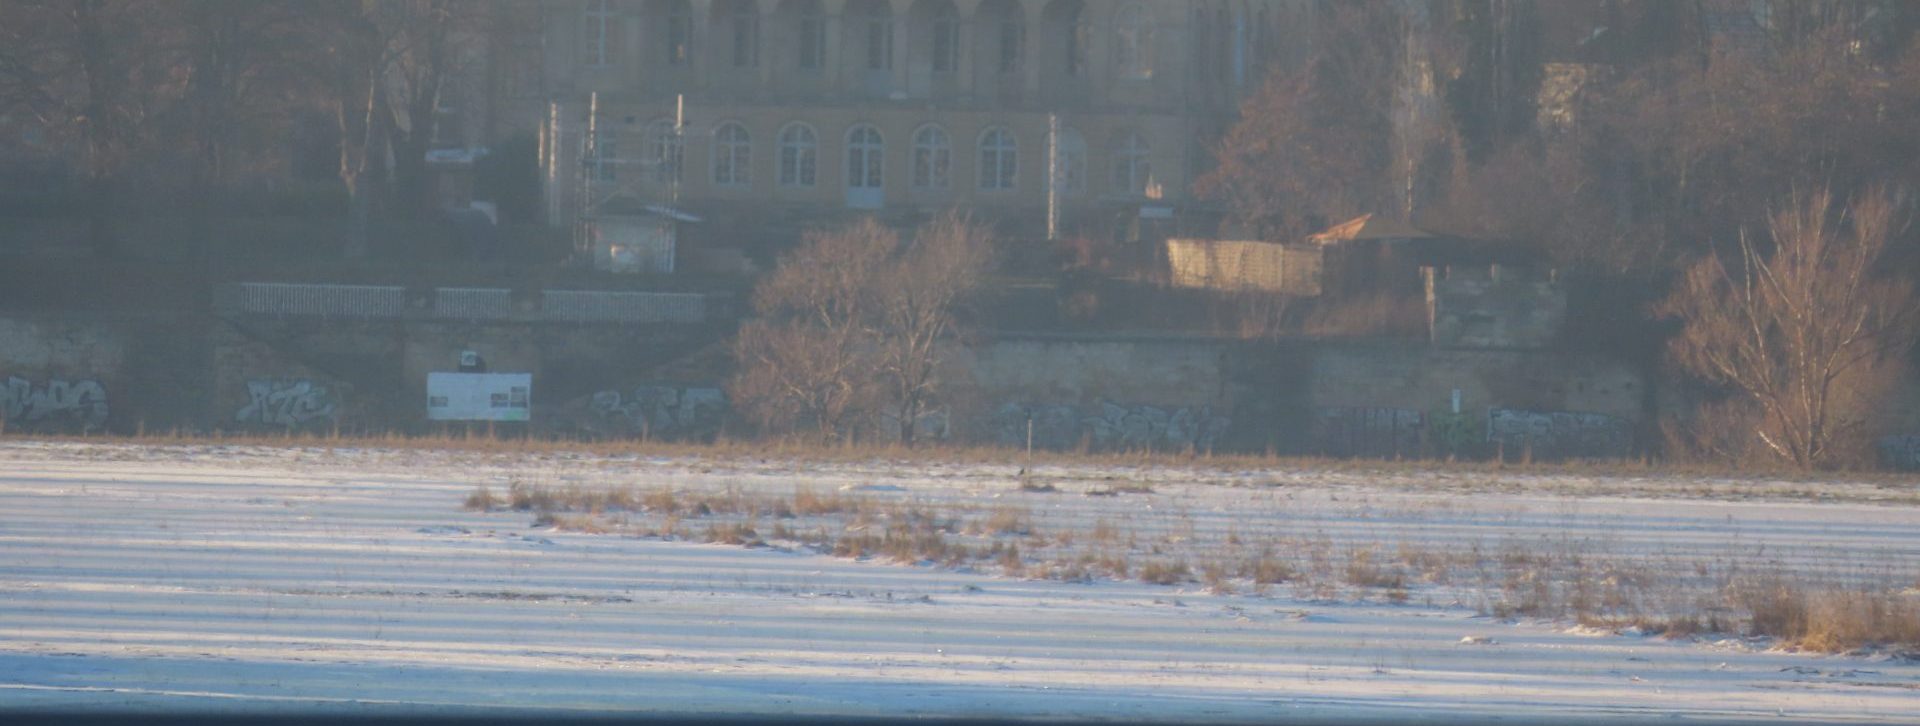 Schloss Übigau mit Frost in der Flutinne